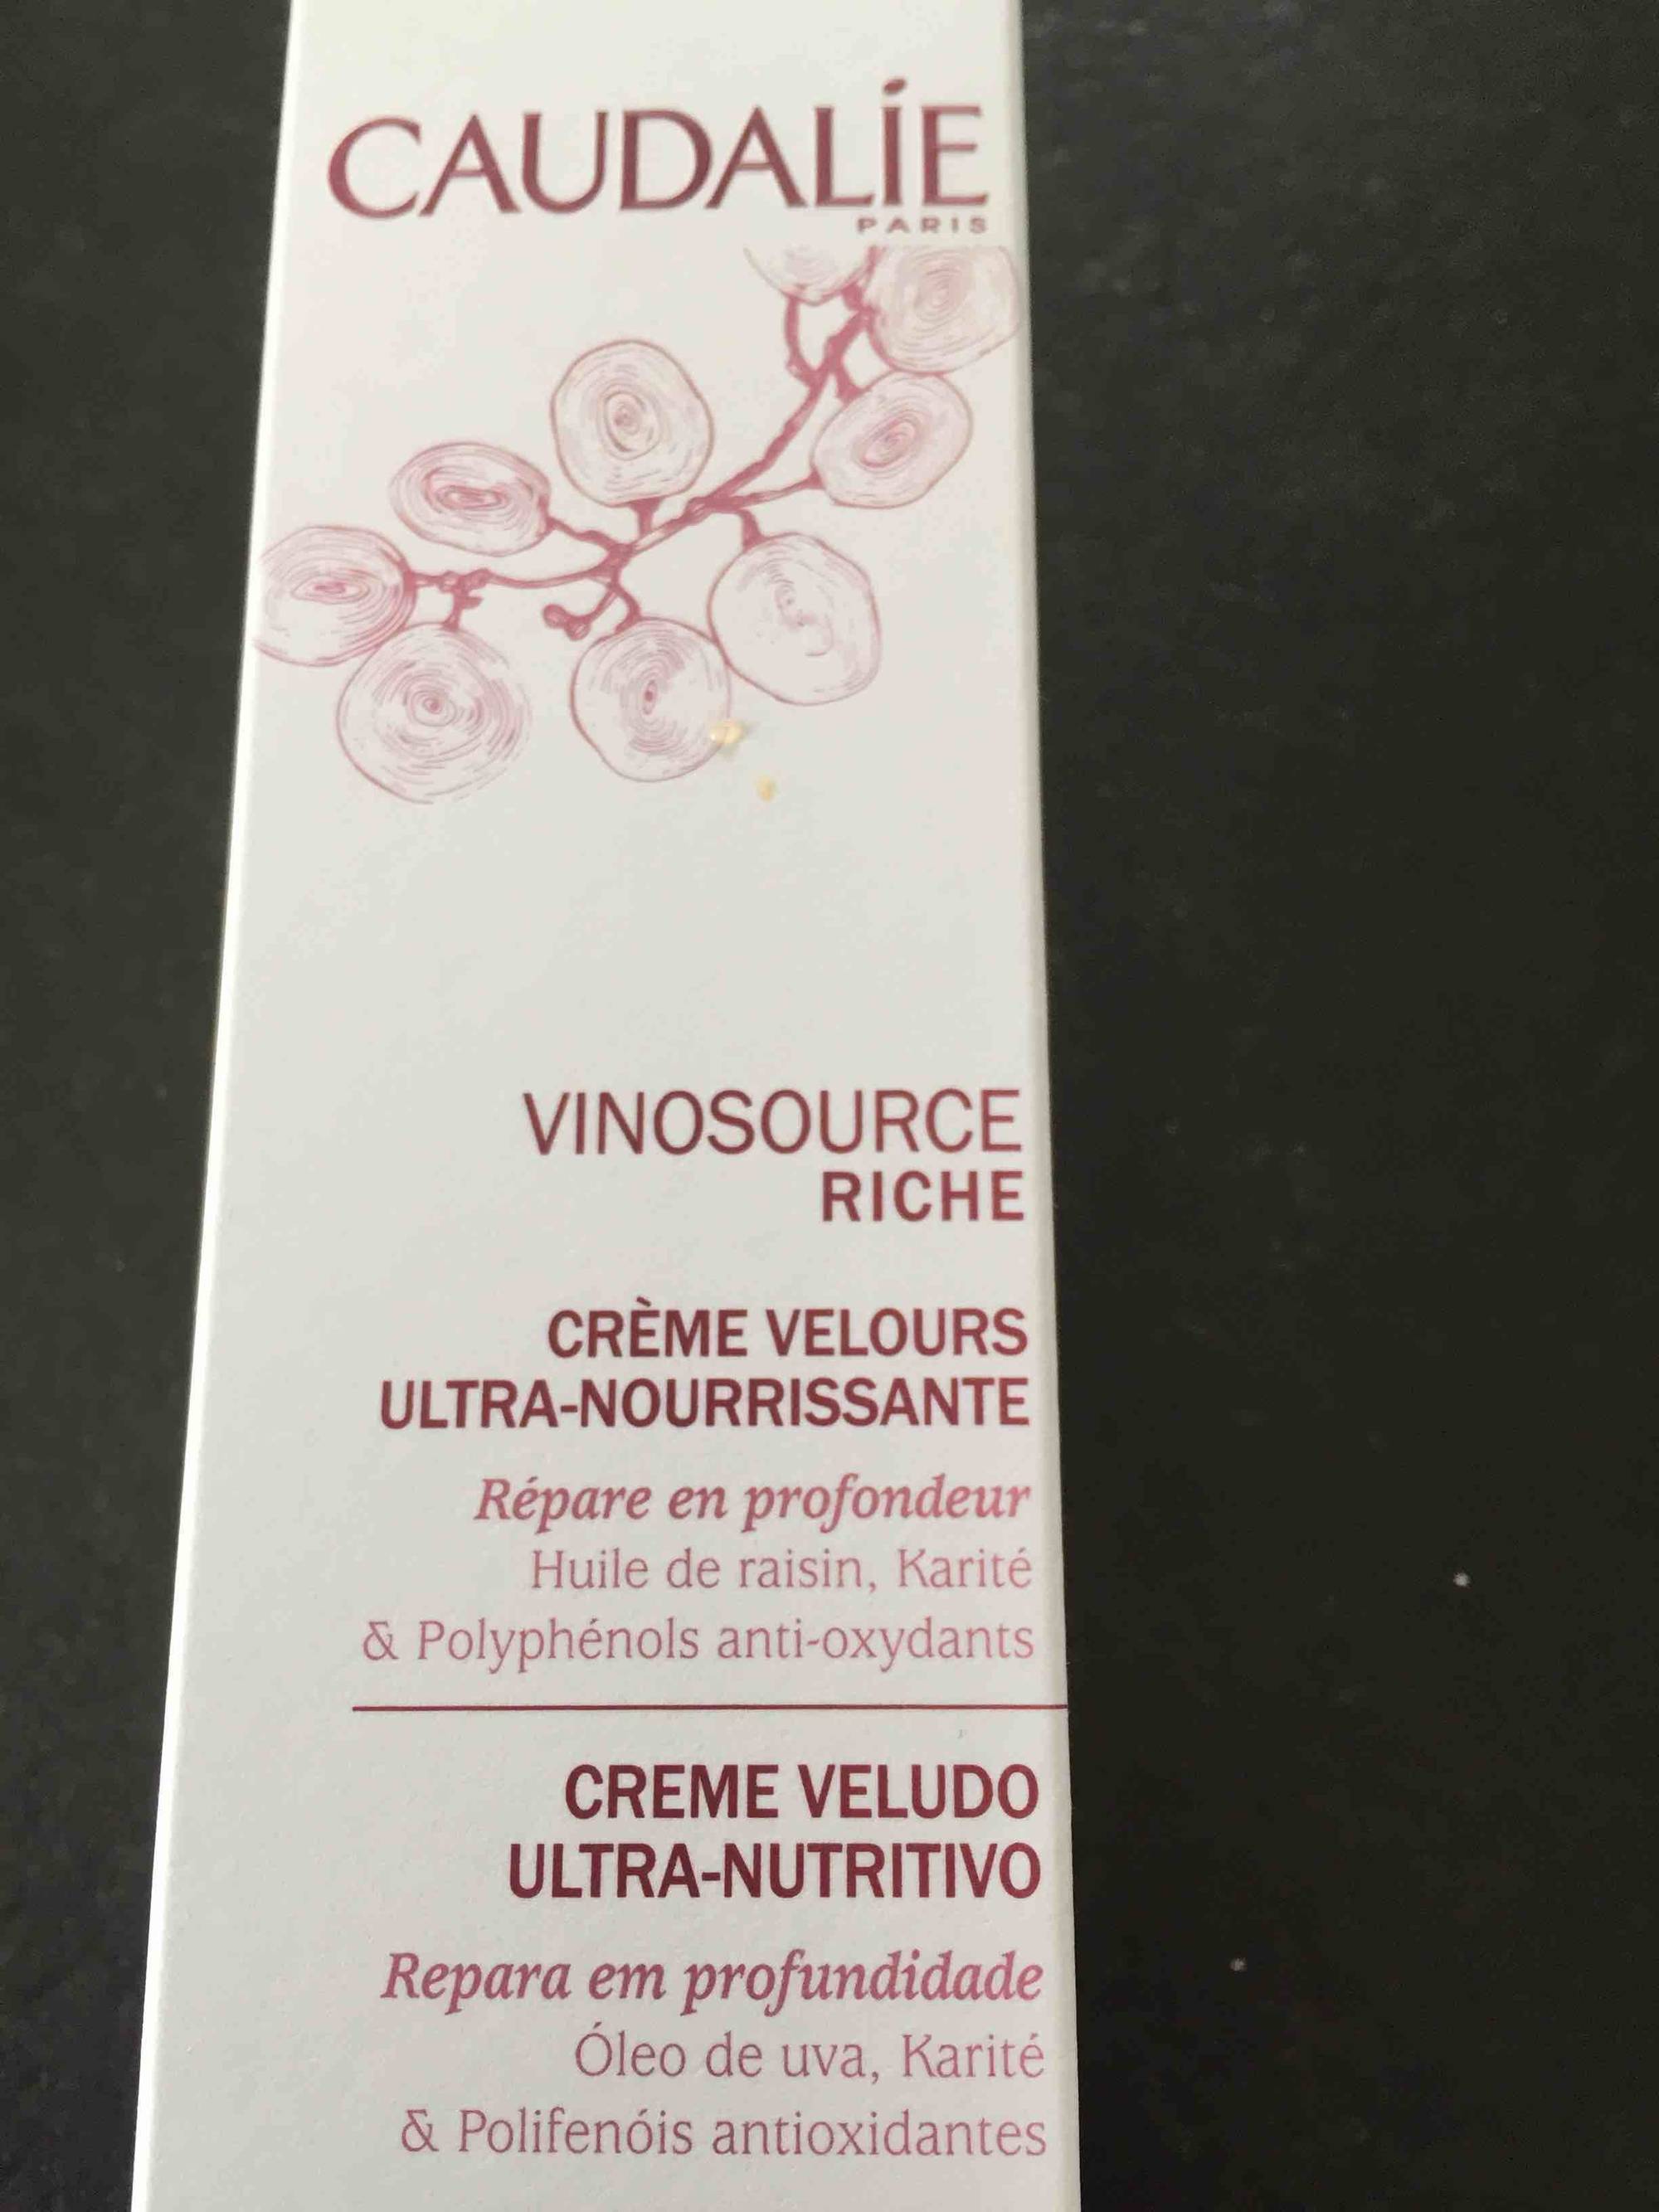 CAUDALIE - Vinosource riche - Crème velours ultra-nourrissante